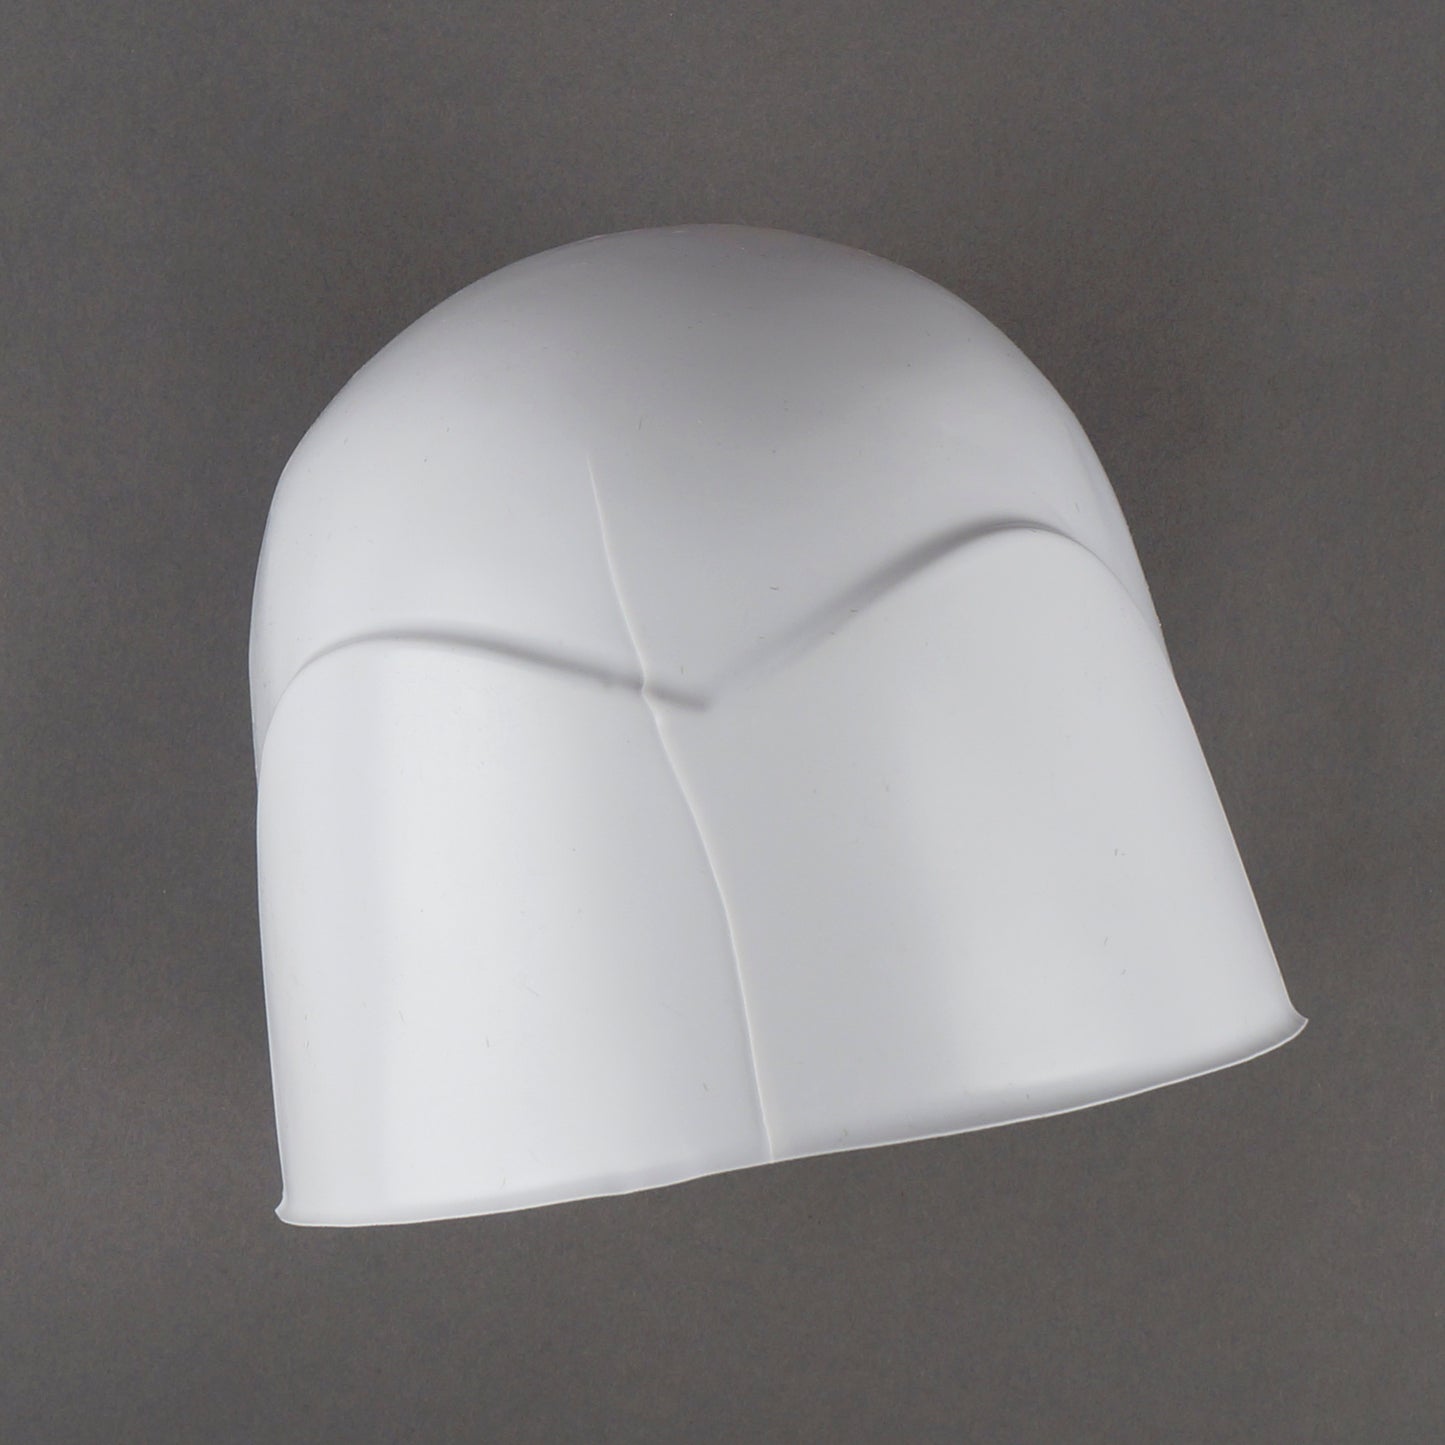 Imperfect Skull Cap for Headdress - White